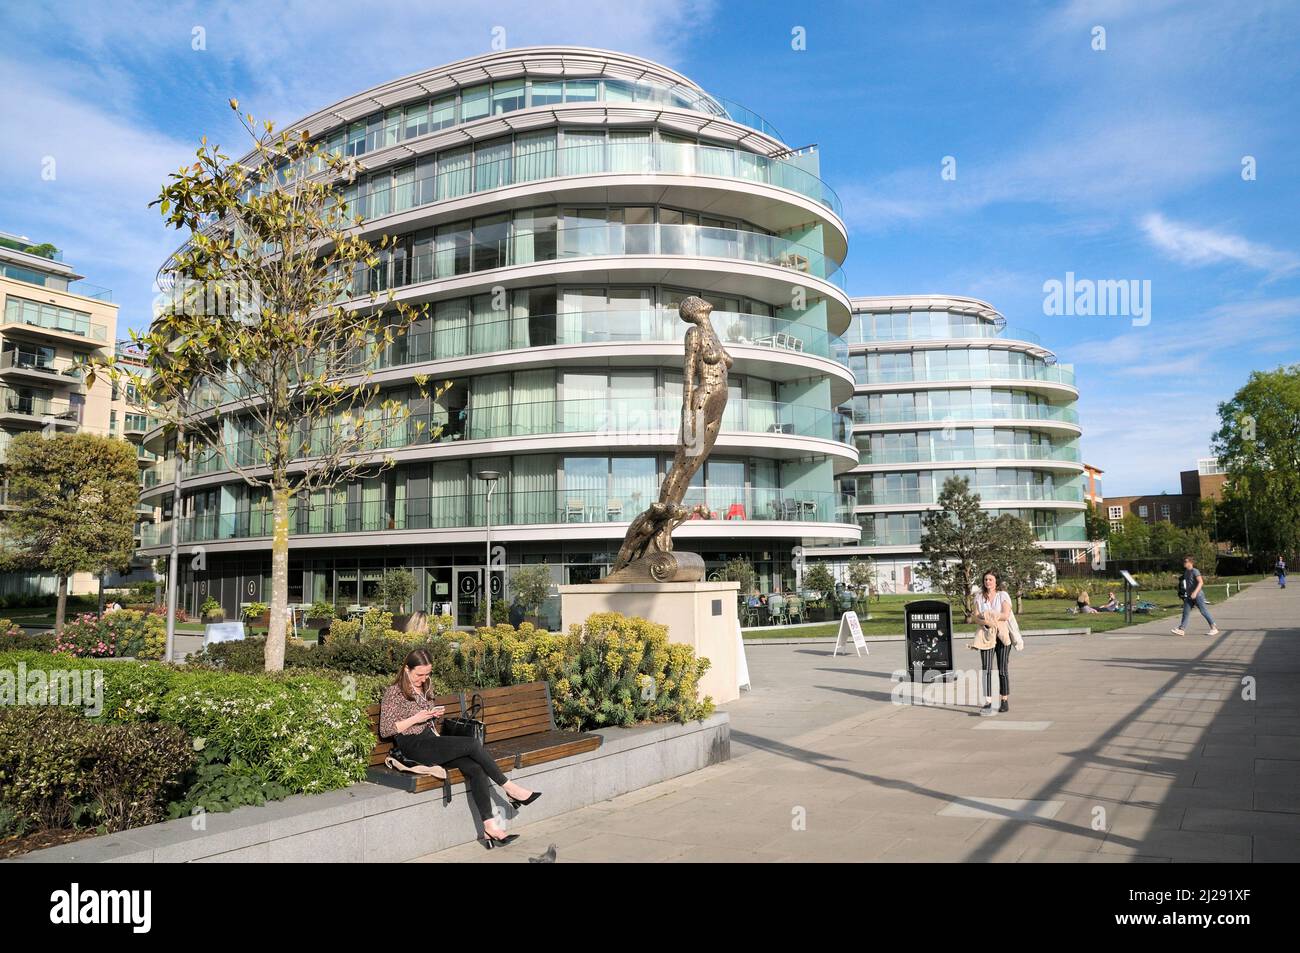 Moderni appartamenti lungo il fiume e sculture a testa di statuetta di Rick Kirby, Distillery Wharf, Fulham Reach, Hammersmith e Fulham, West London, Inghilterra, Regno Unito Foto Stock